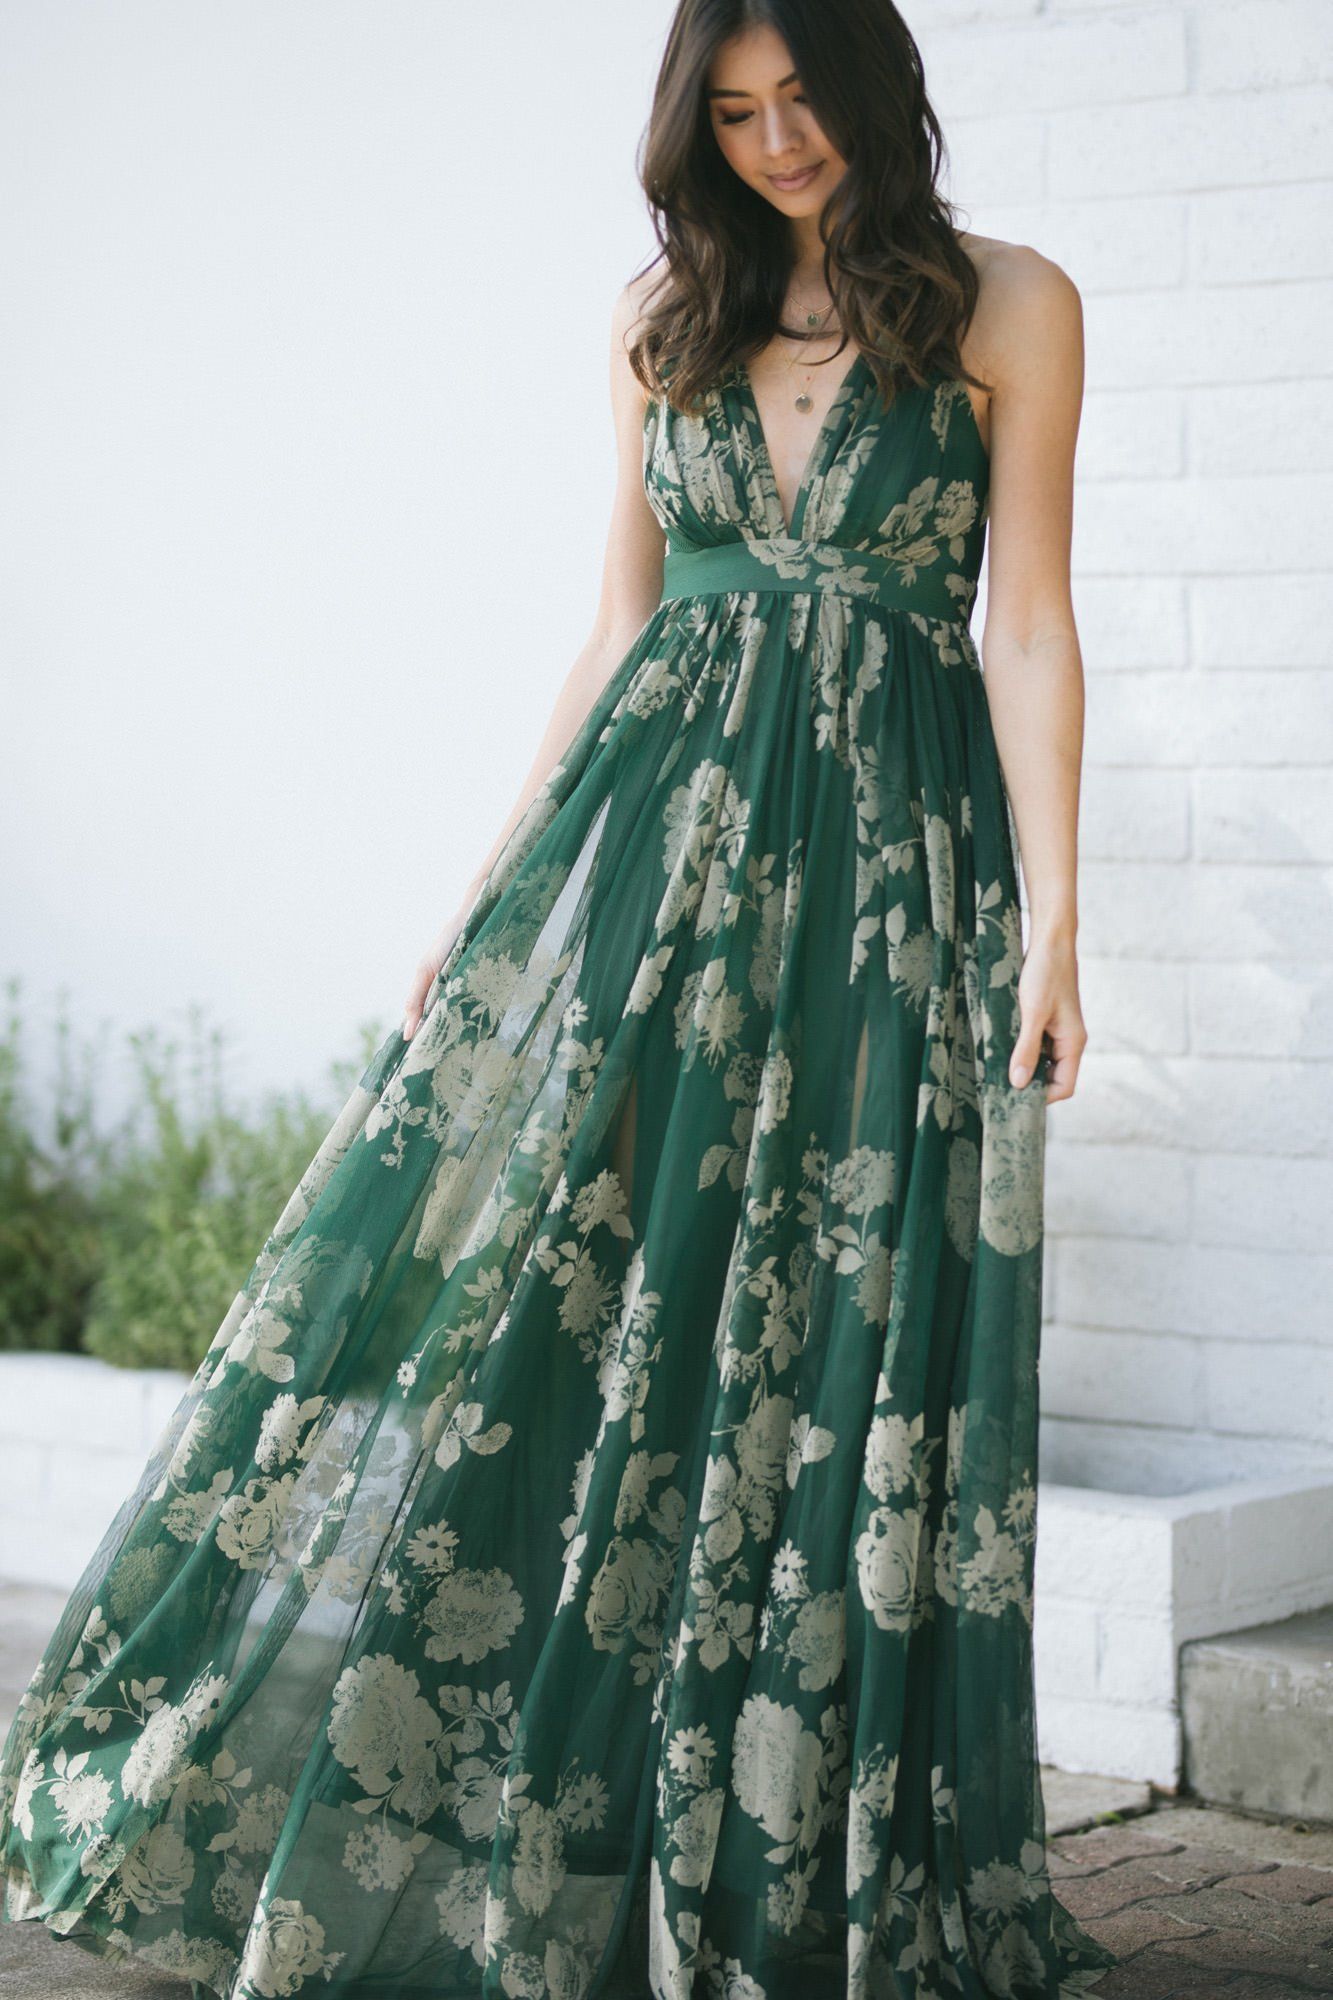 Designer Maxi Dresses to Buy Online for Women.